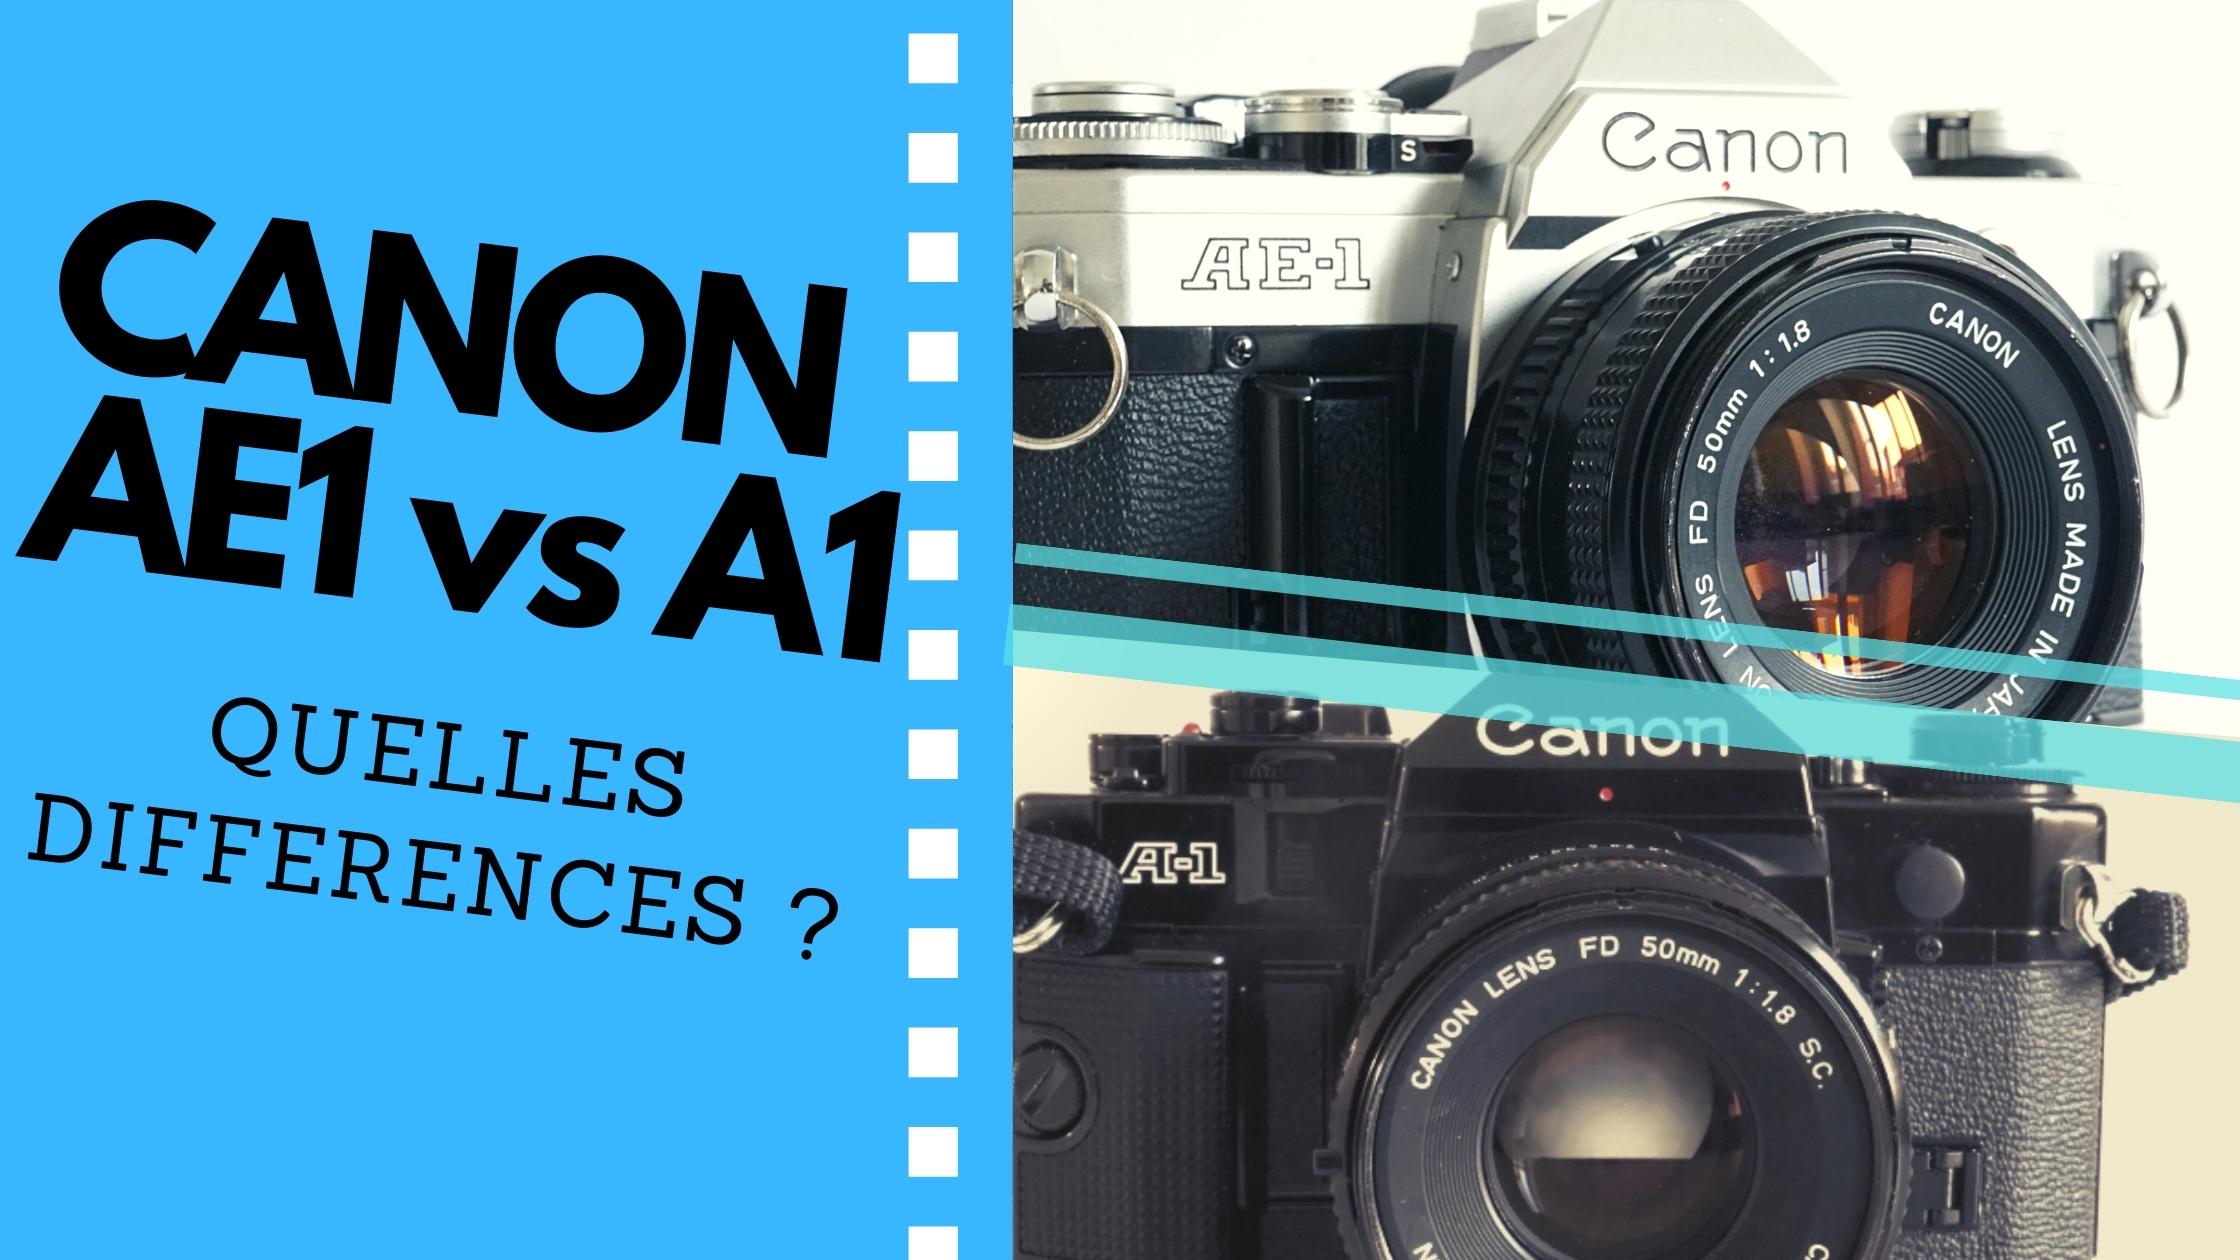 Canon AE1 vs Canon A1 quelles sont les différences ?